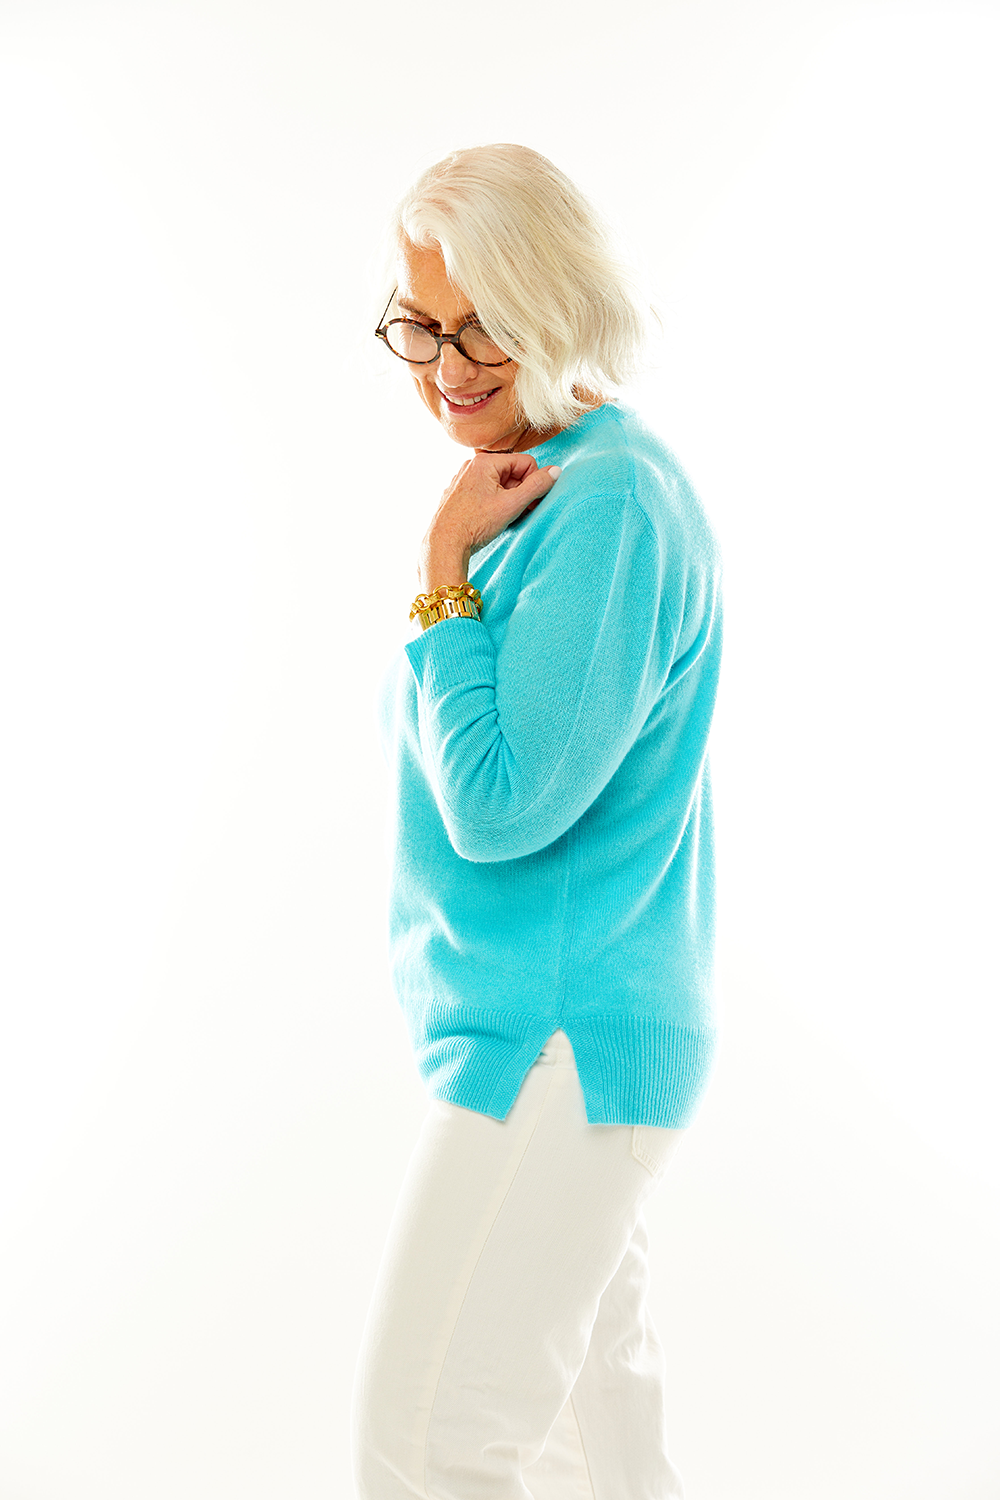 Woman in aqua cashmere pullover